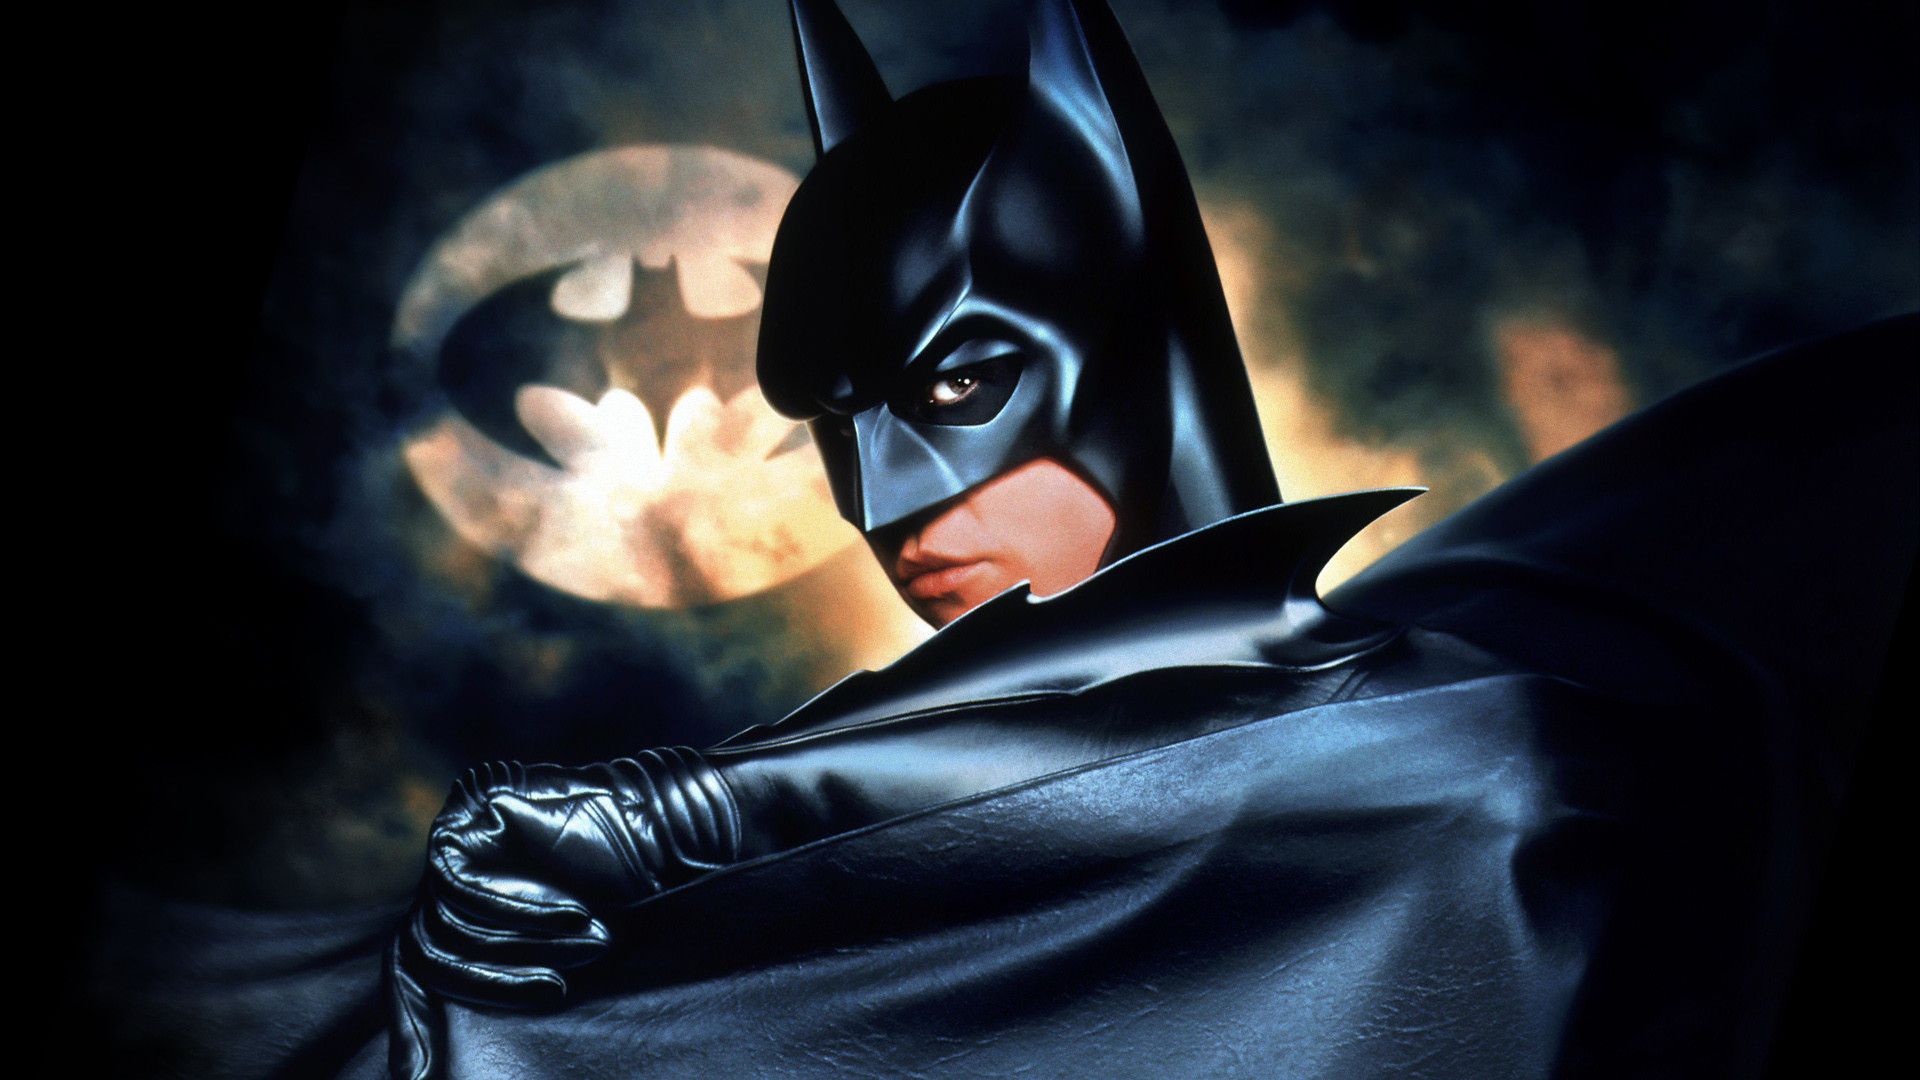 Batman Forever Wallpaper